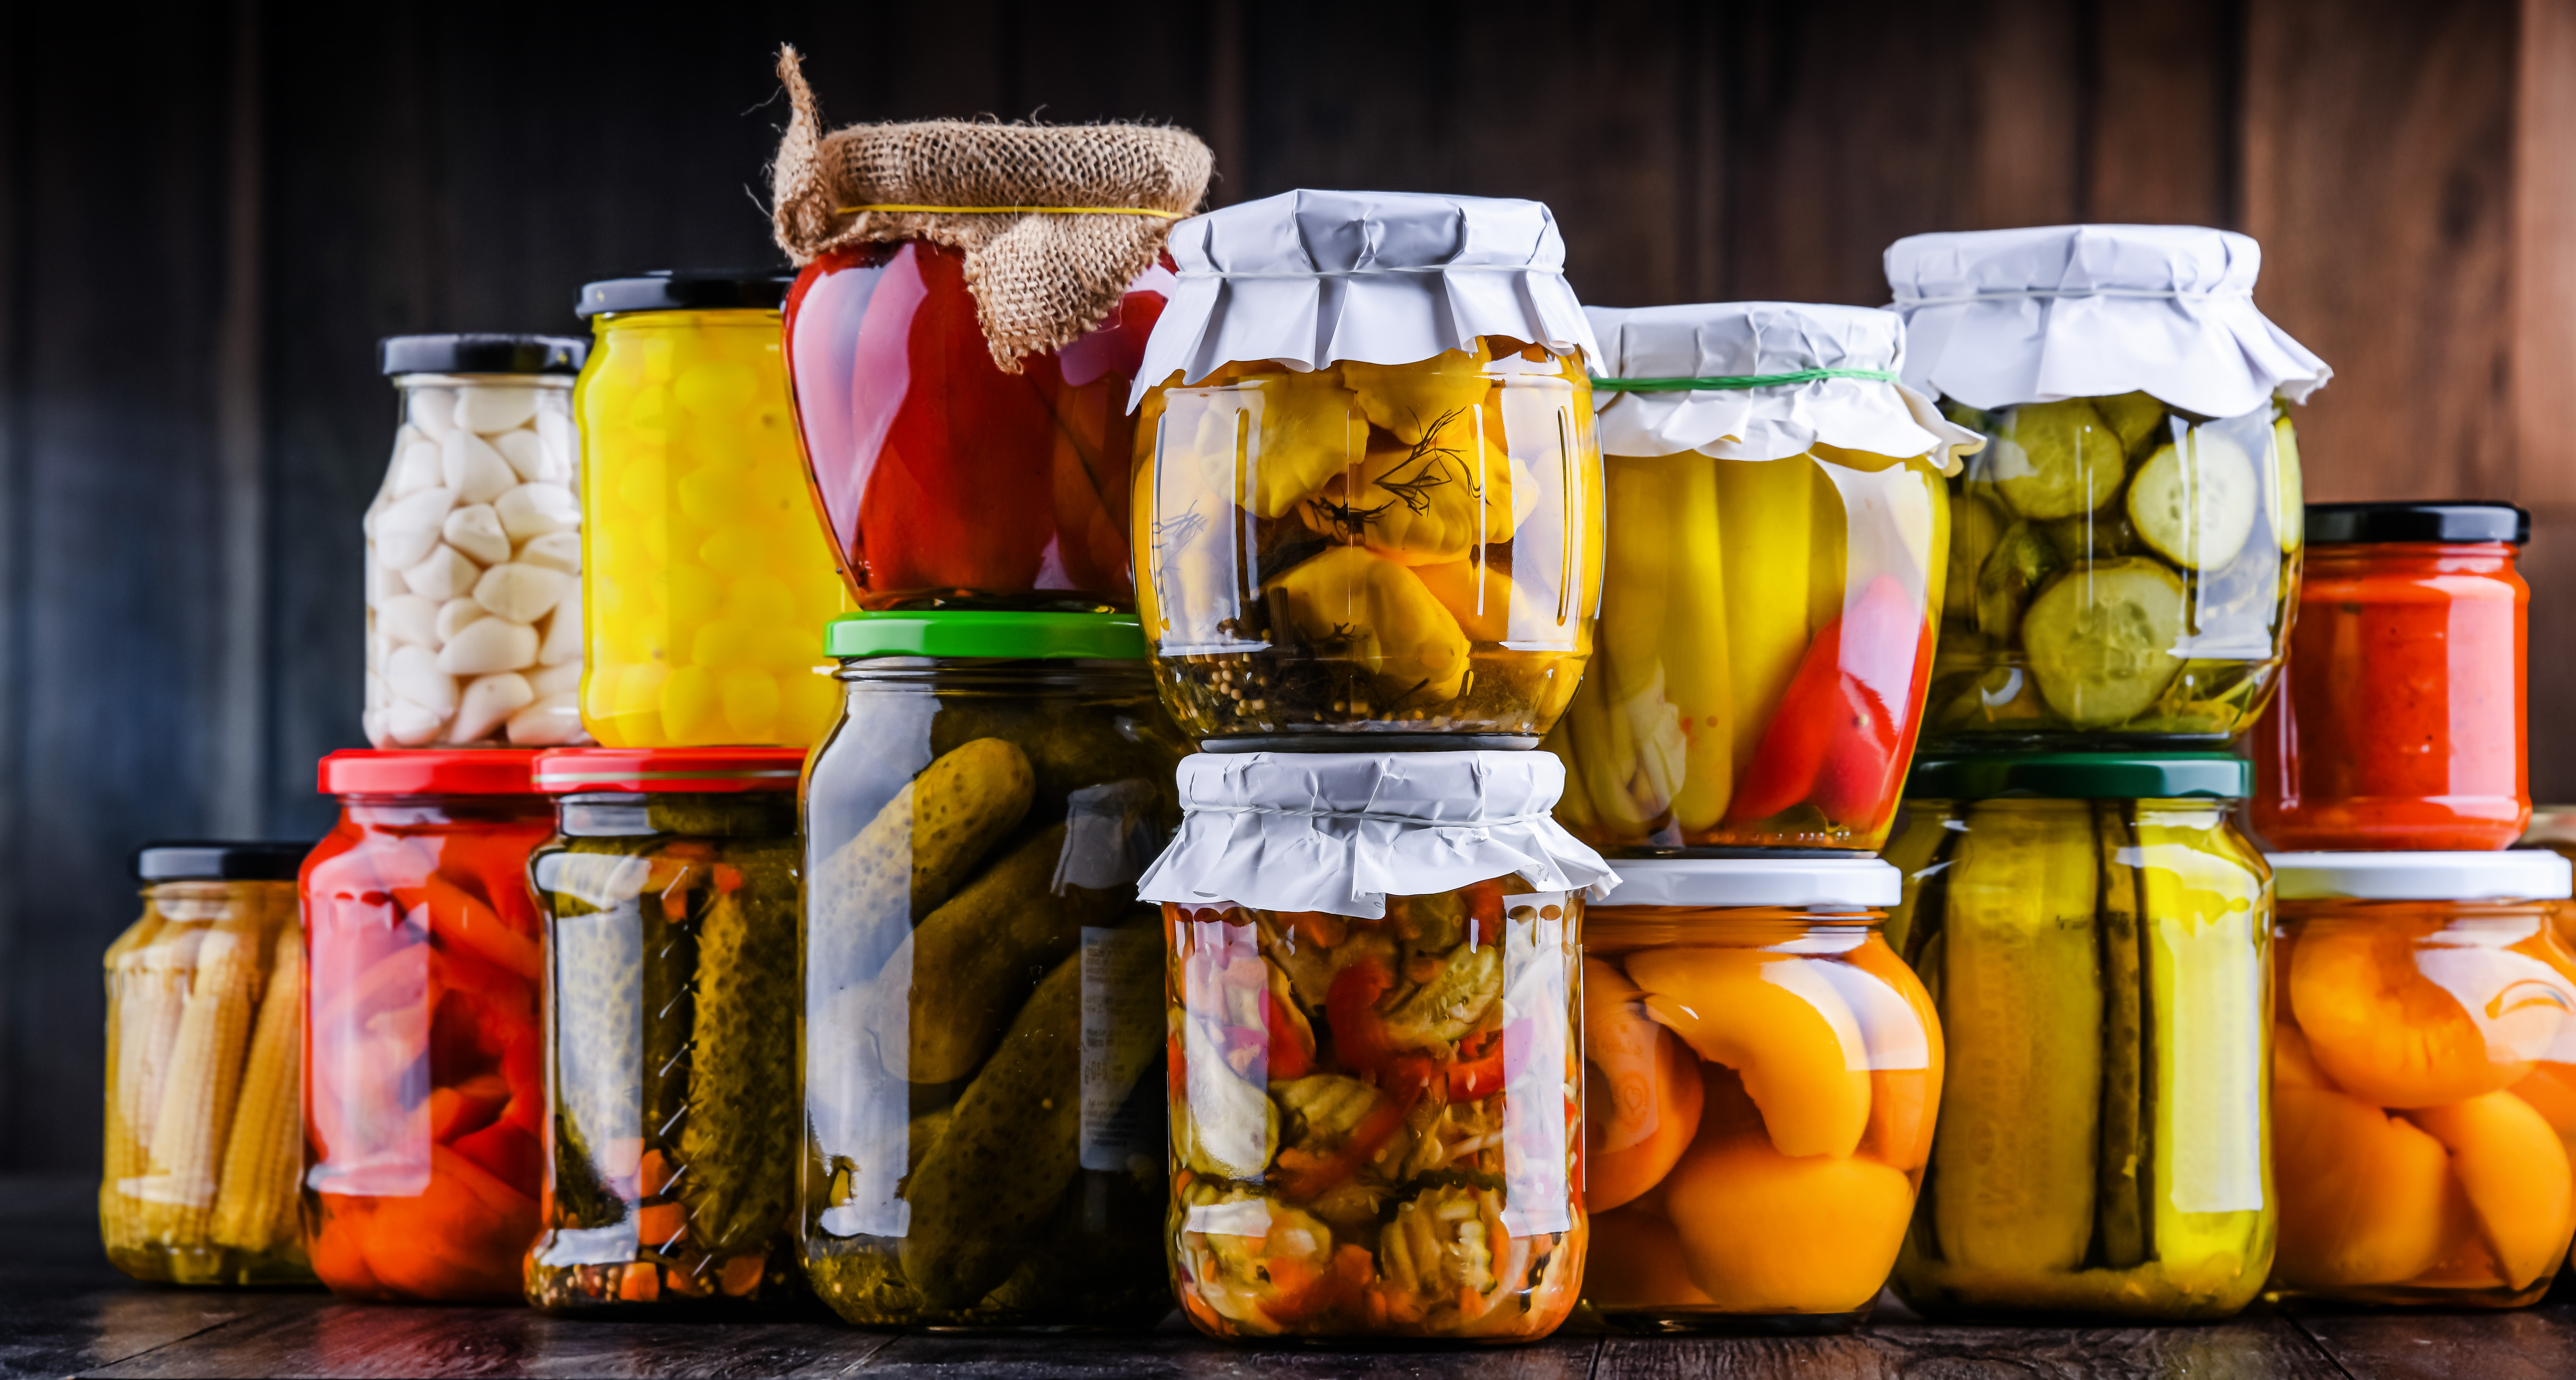 multiples bocaux de verre pour conserver des légumes, fruits ou sauces faits maison